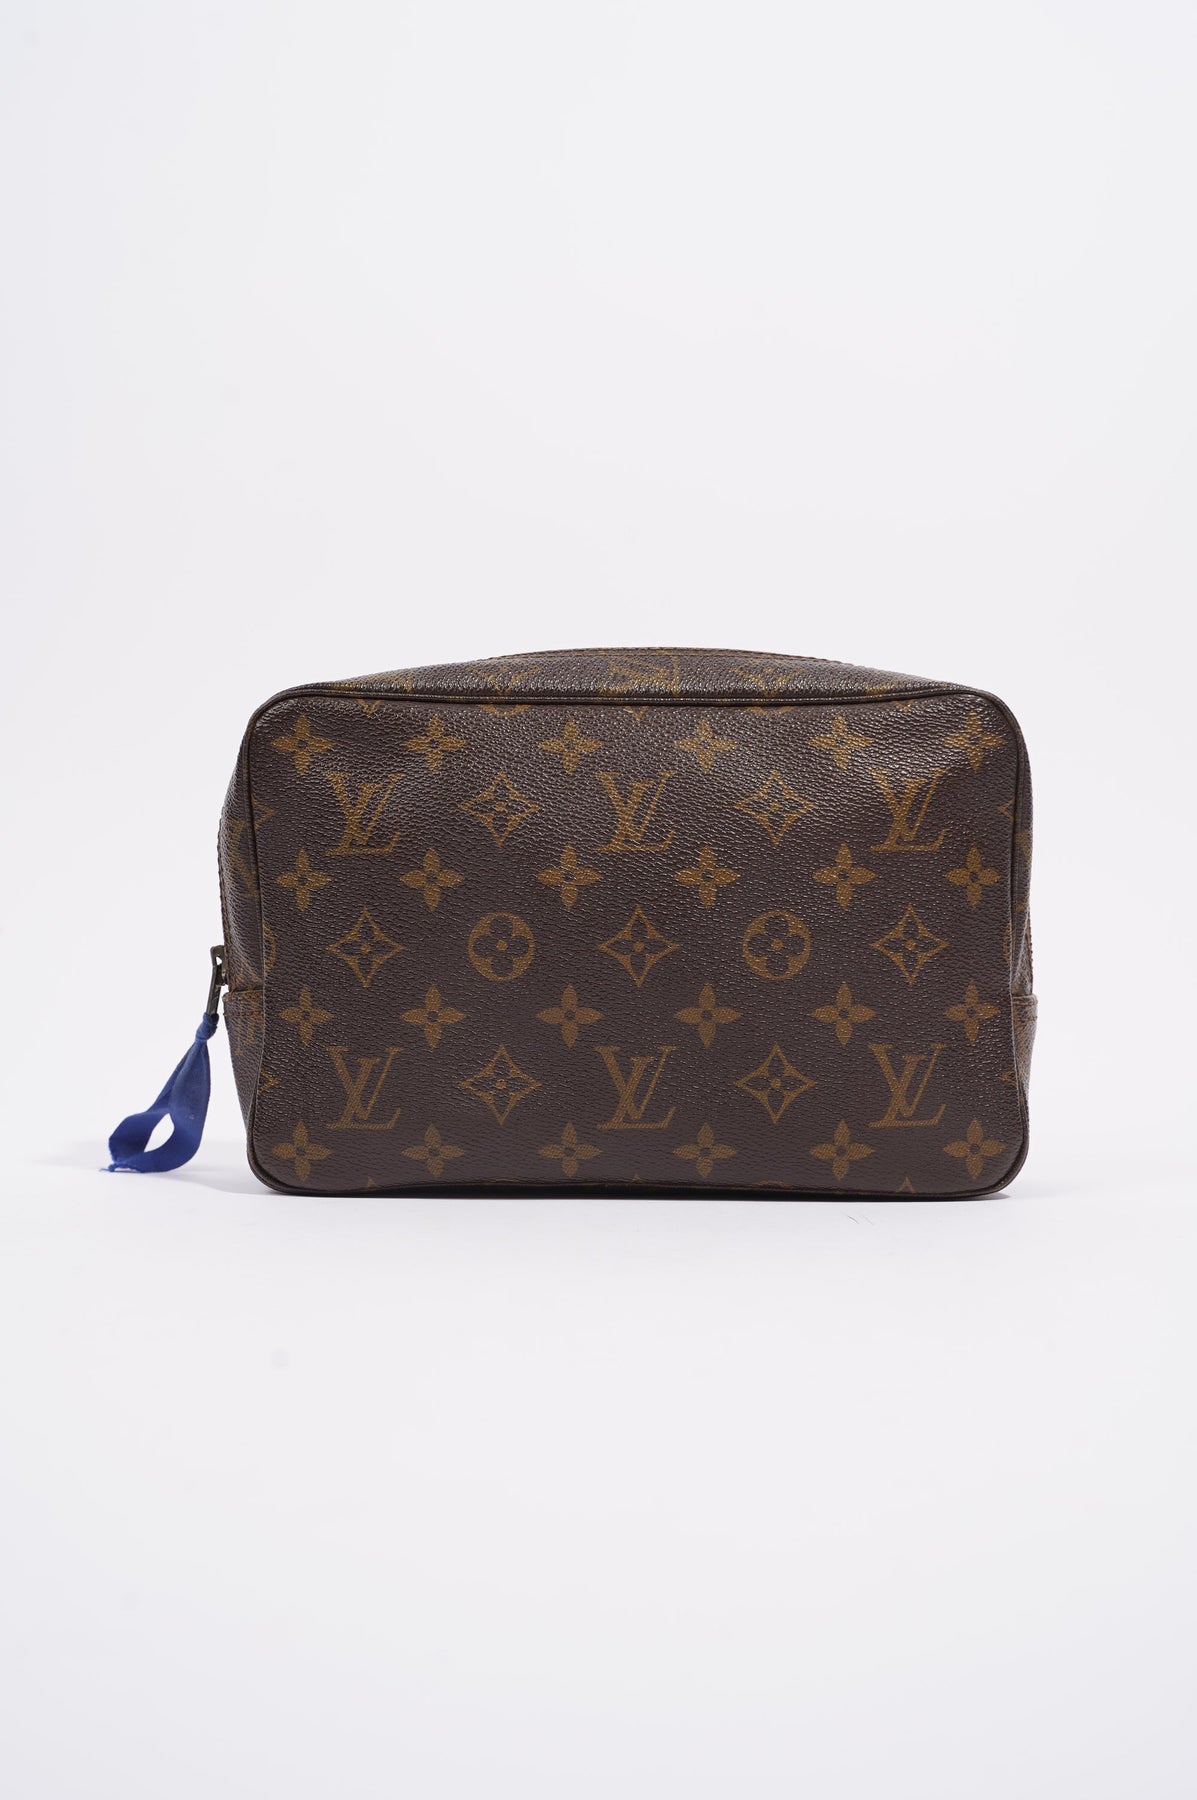 Louis Vuitton Trousse de toilette patent leather clutch bag